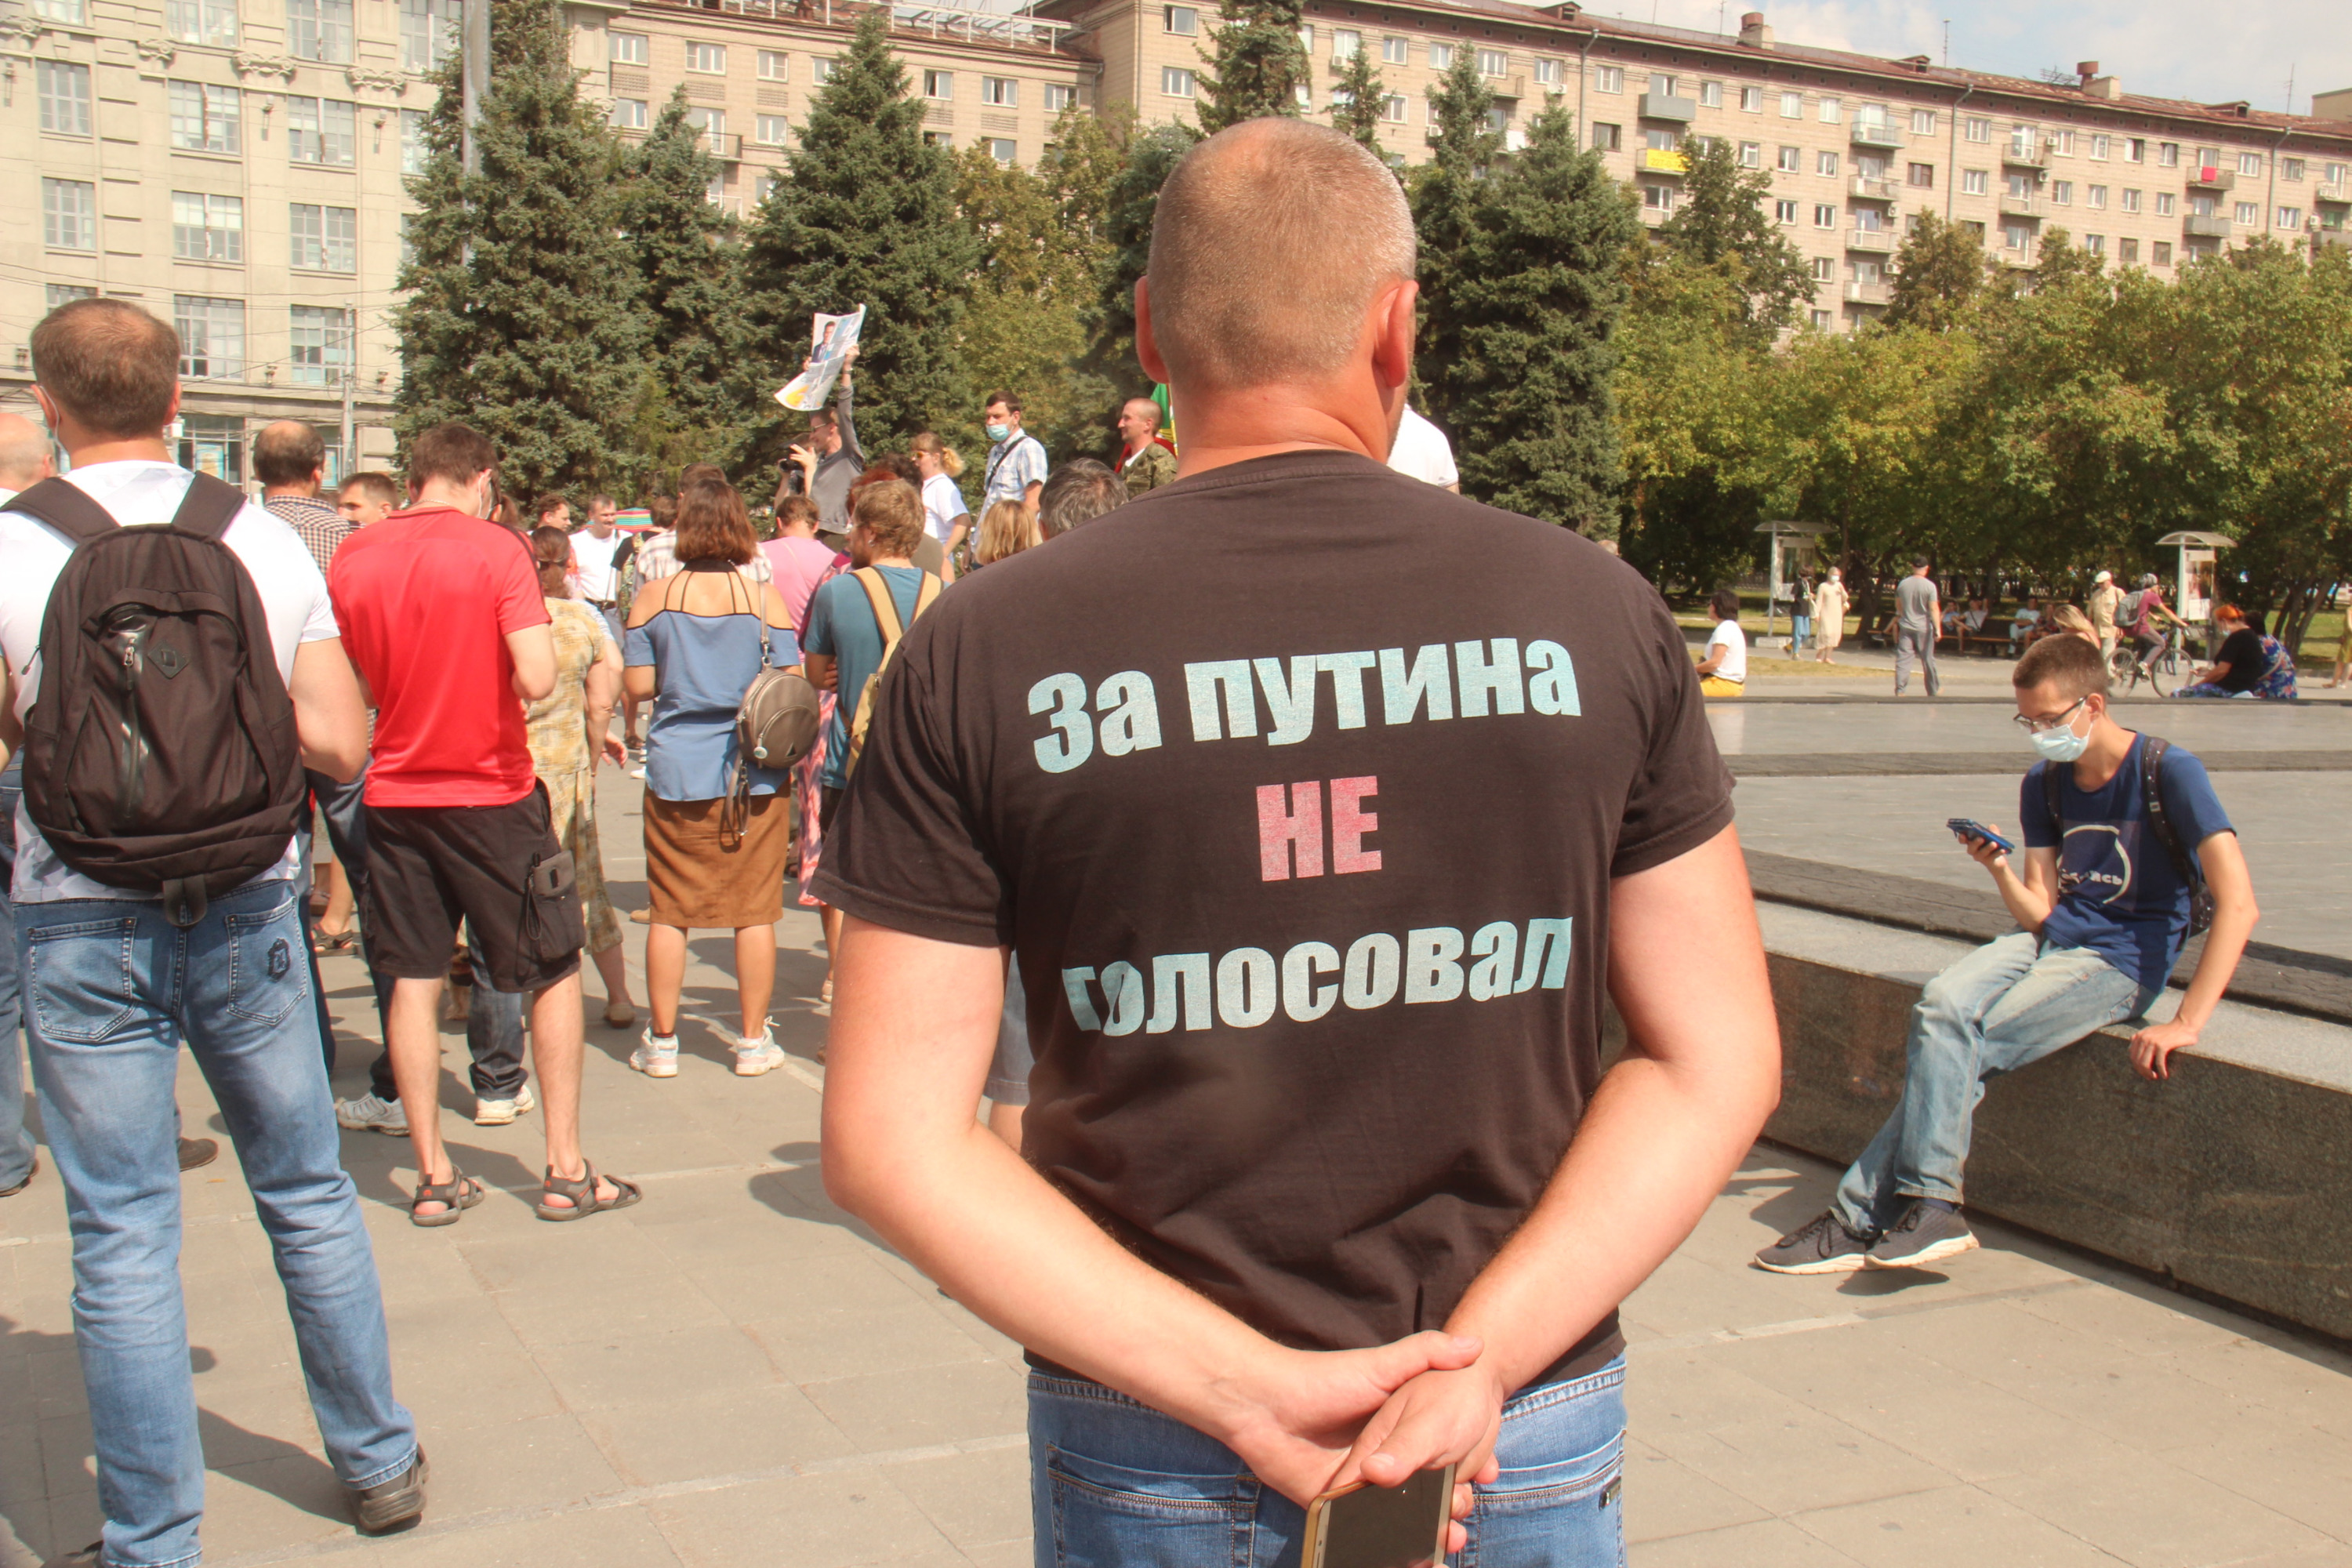 Вся россия главное. Против Путина. Футболка против Путина. Митинг. Протесты против Путина.